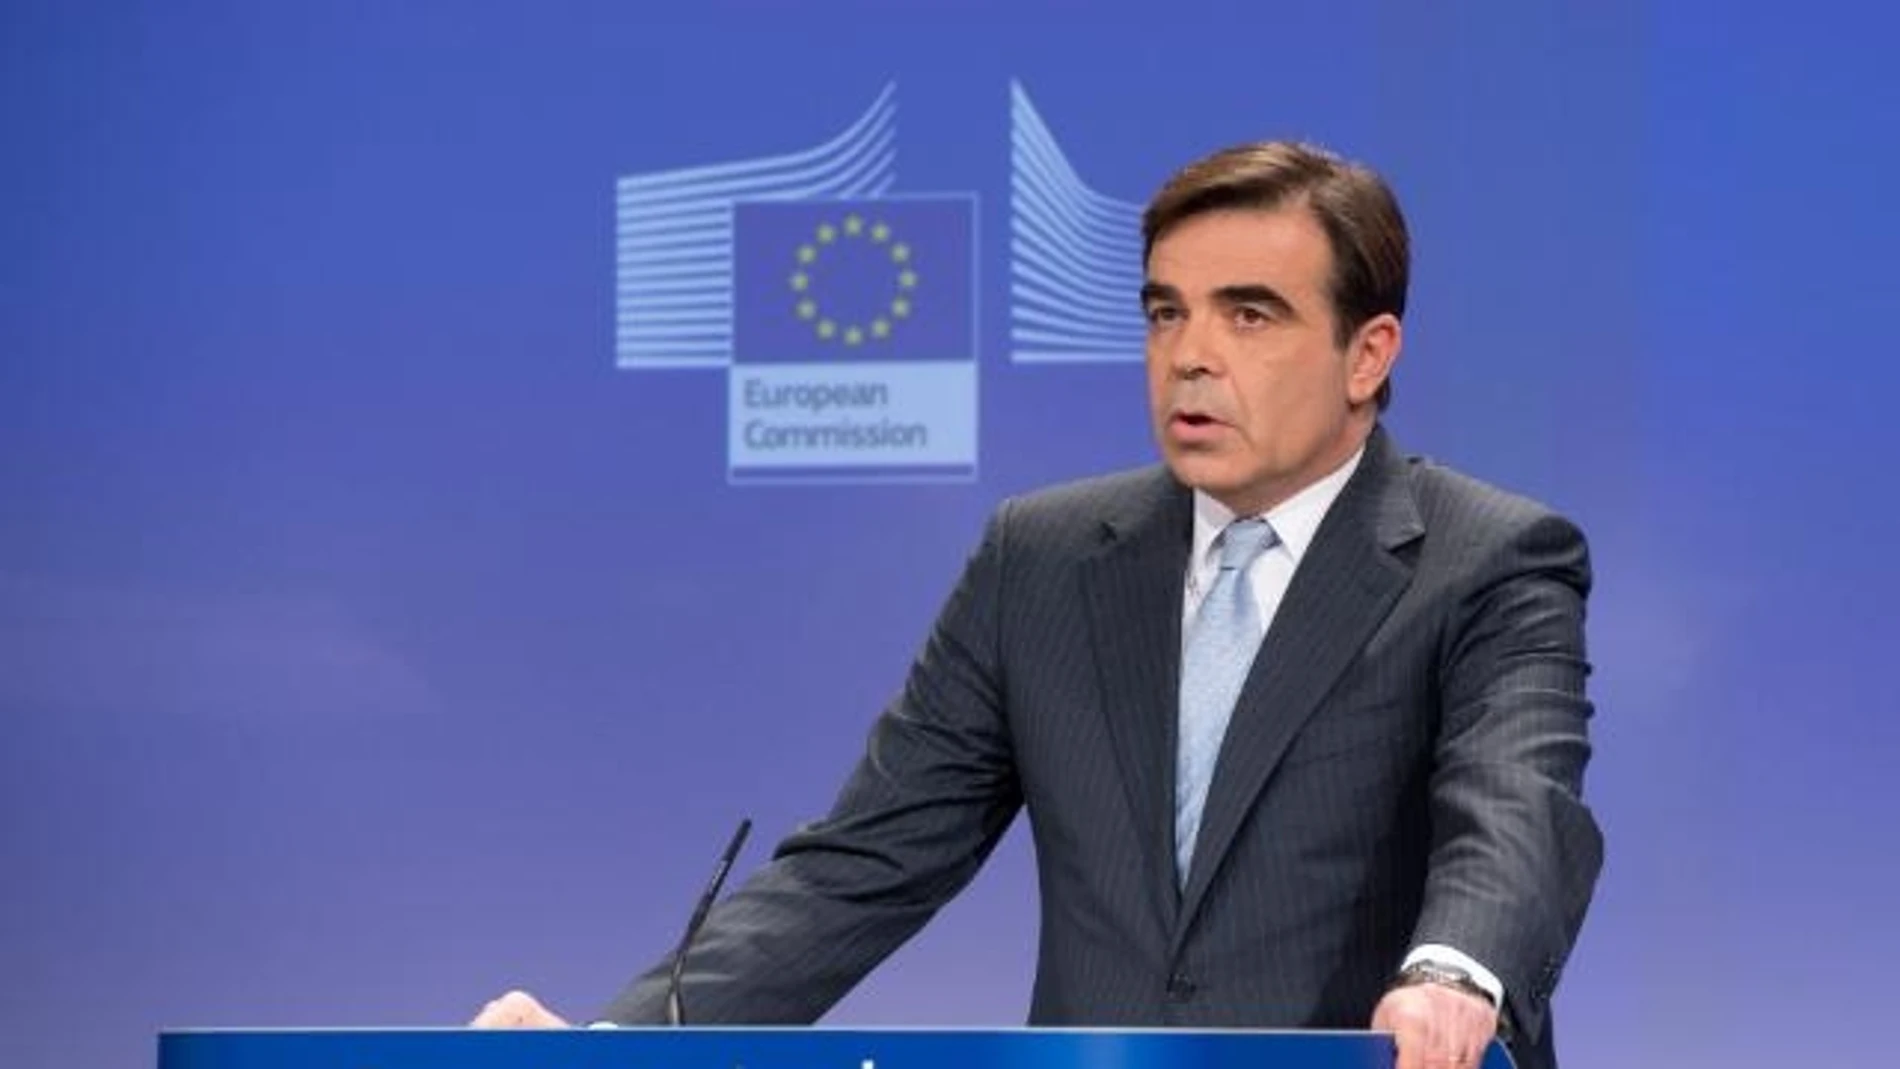 El portavoz de la Comisión Europea, Margaritis Schinas.